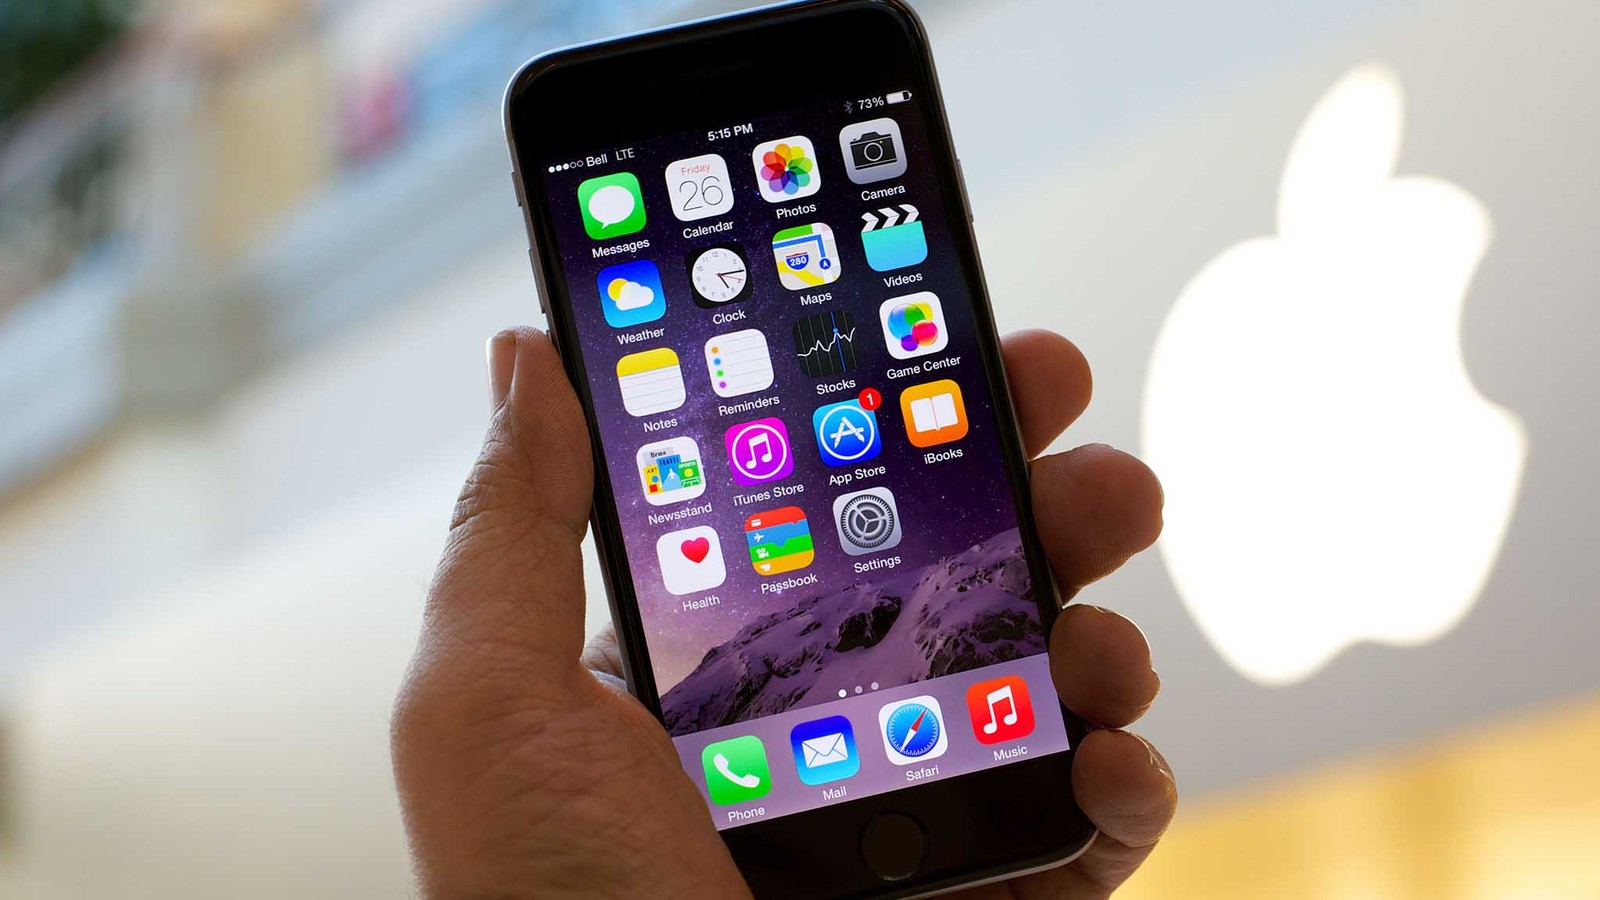 Az Apple egy év használat után szándékosan lelassítja az iPhone-okat